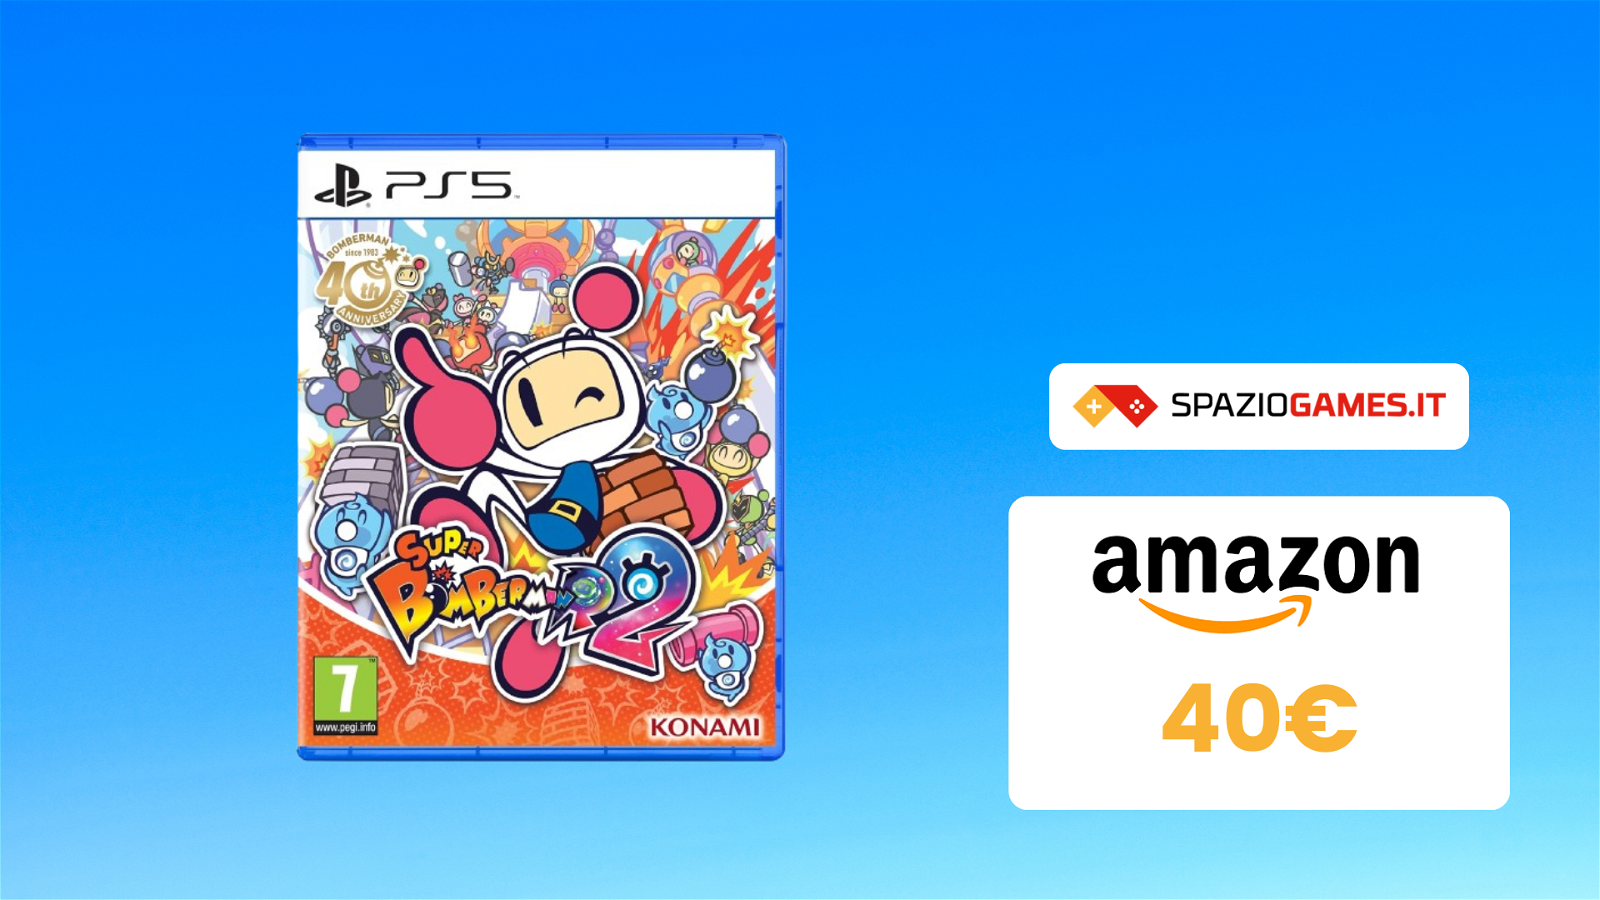 AFFARE sul divertente Super Bomberman R2: oggi solo 40€ su Amazon!